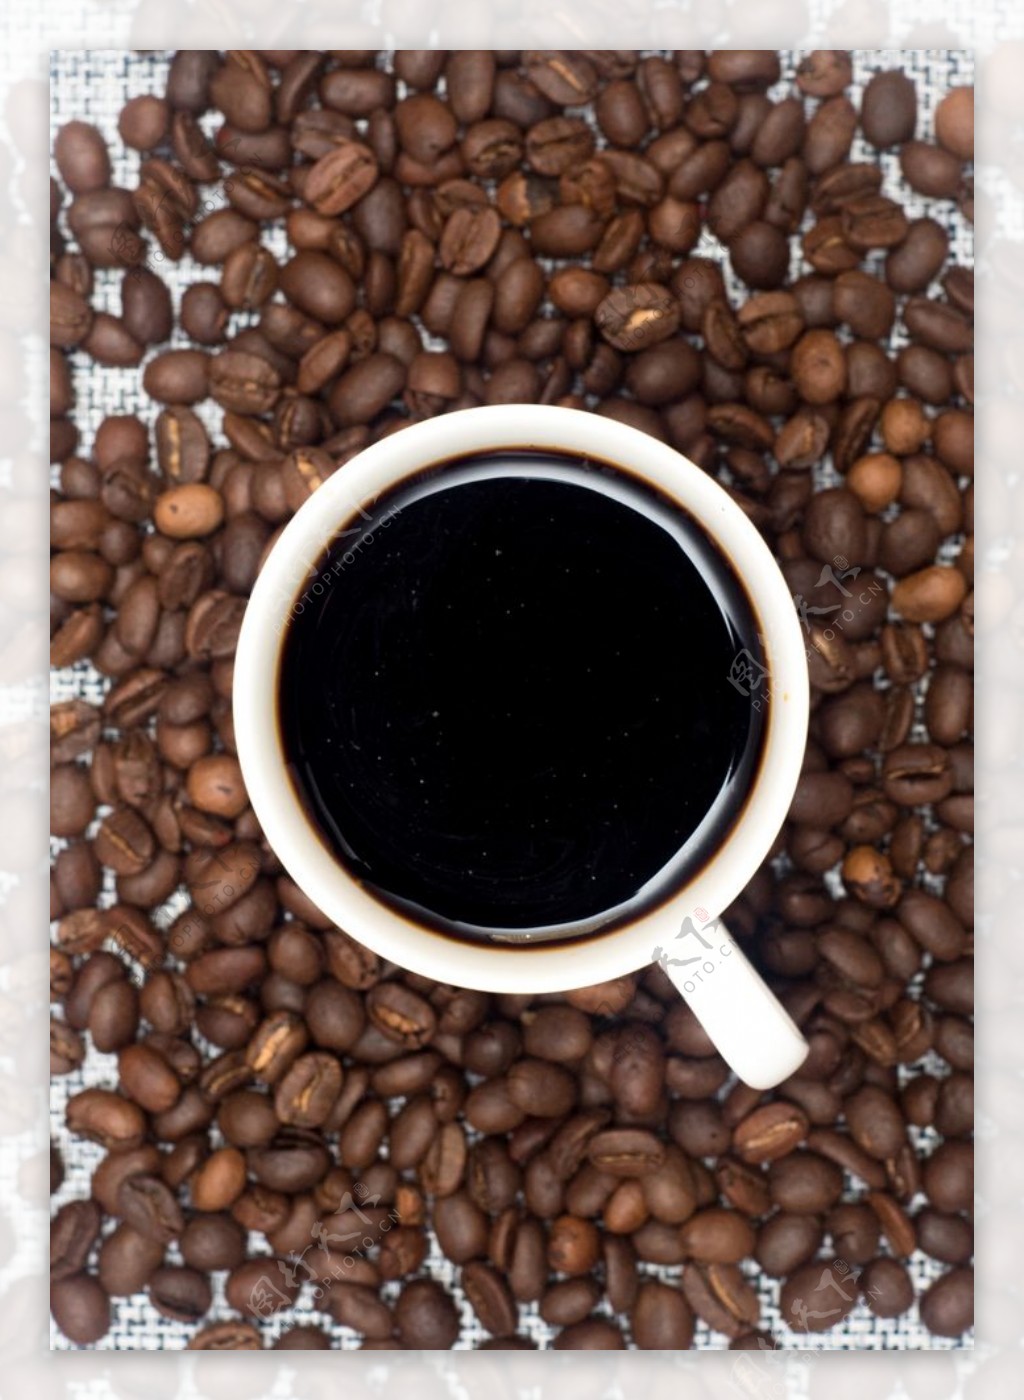 咖啡和咖啡豆